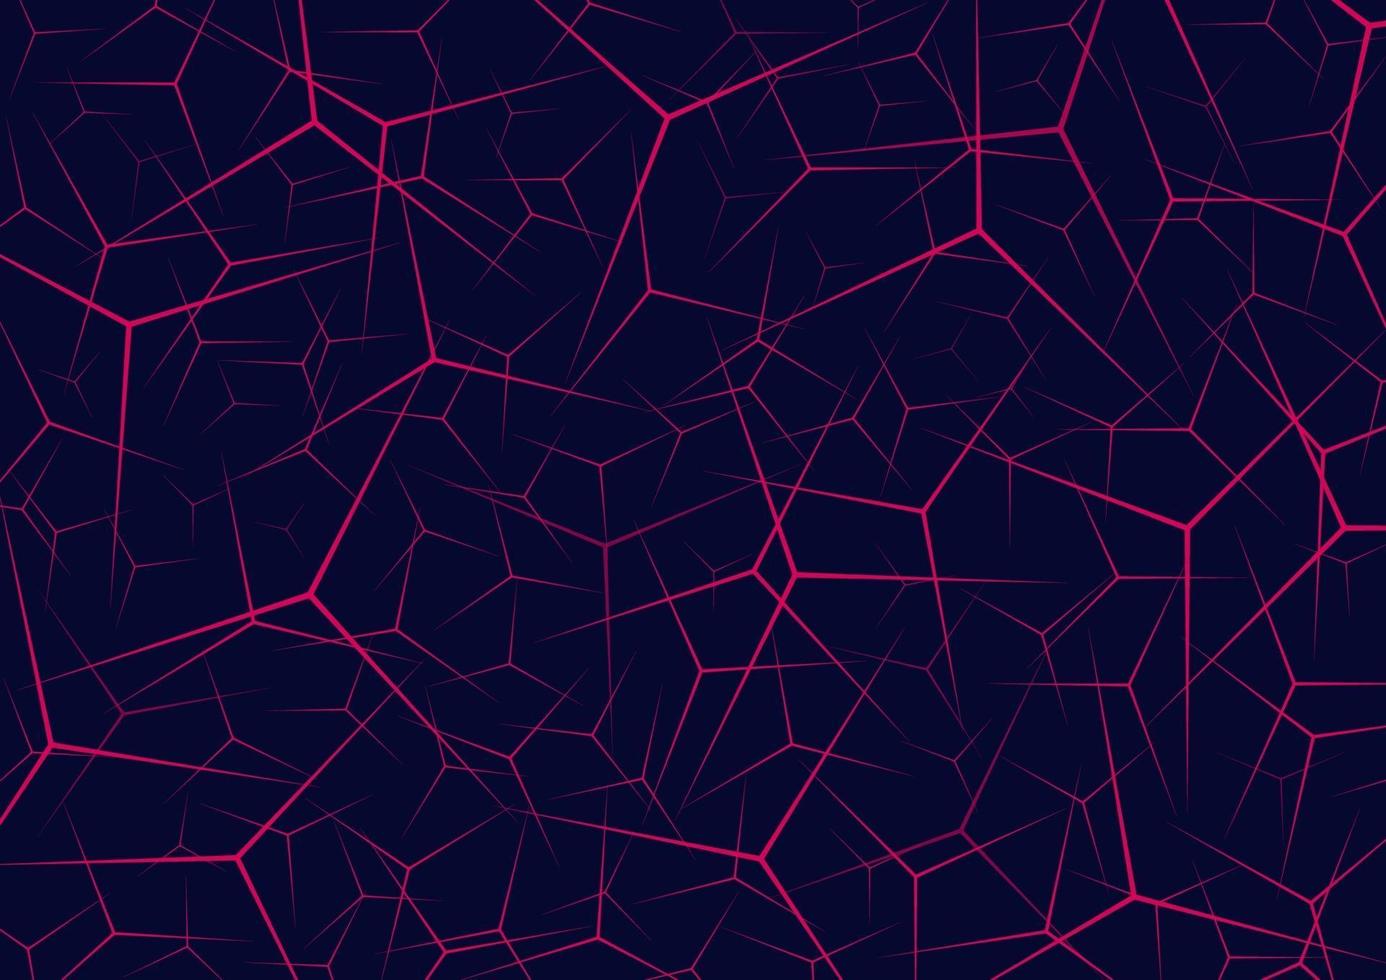 abstrakt rosa skarp linjemönster som överlappar varandra på mörkblå bakgrund. vektor